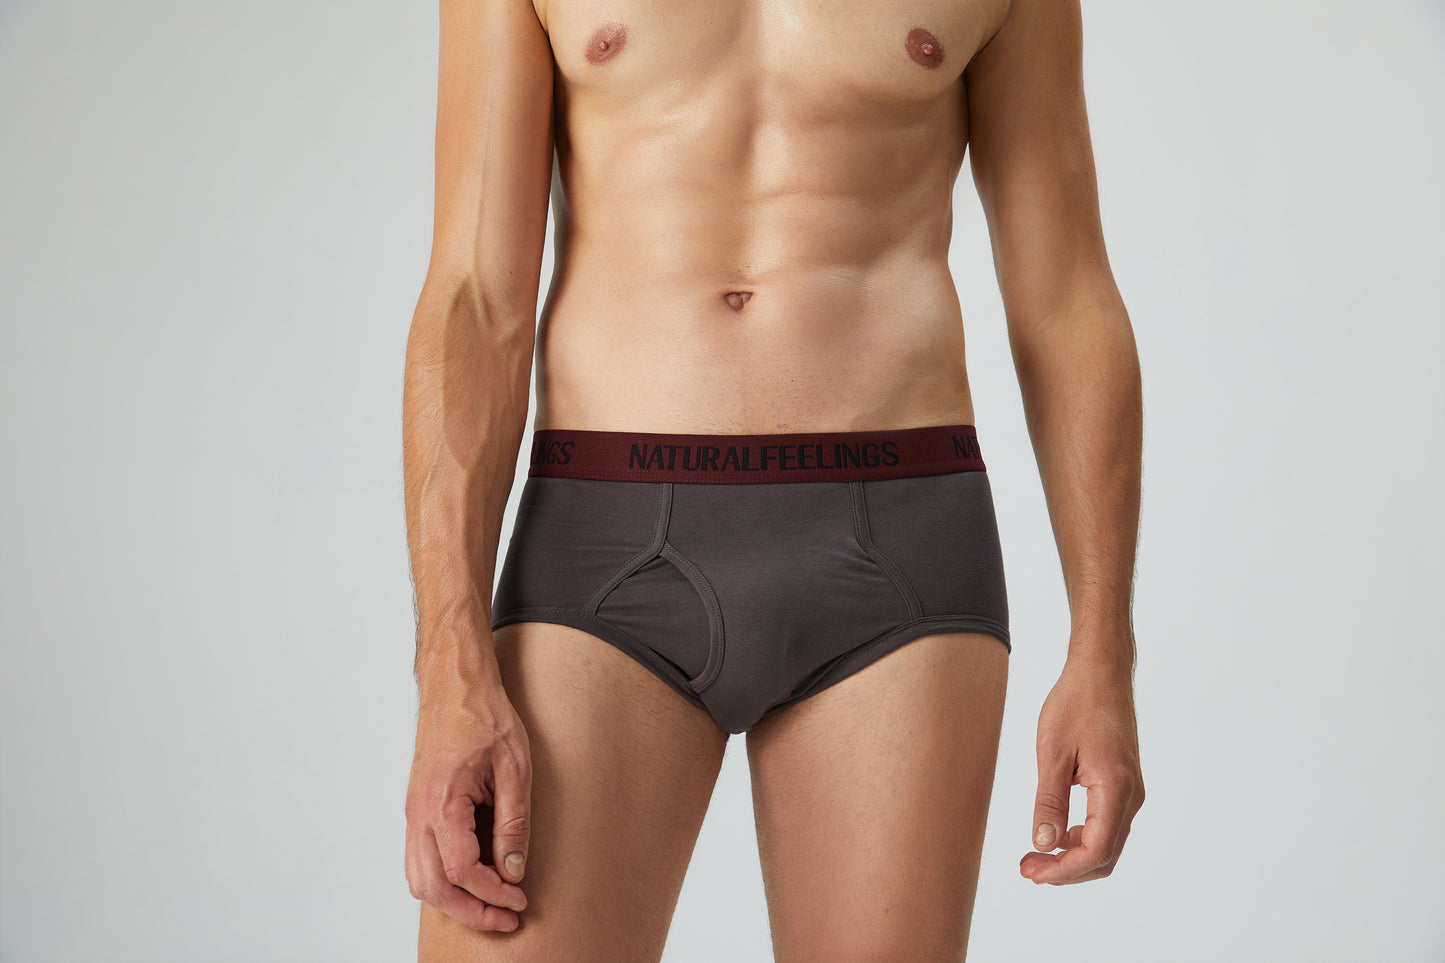 Natural Feelings Men's 6 Underwear Boxers Briefs Modal Open Fly